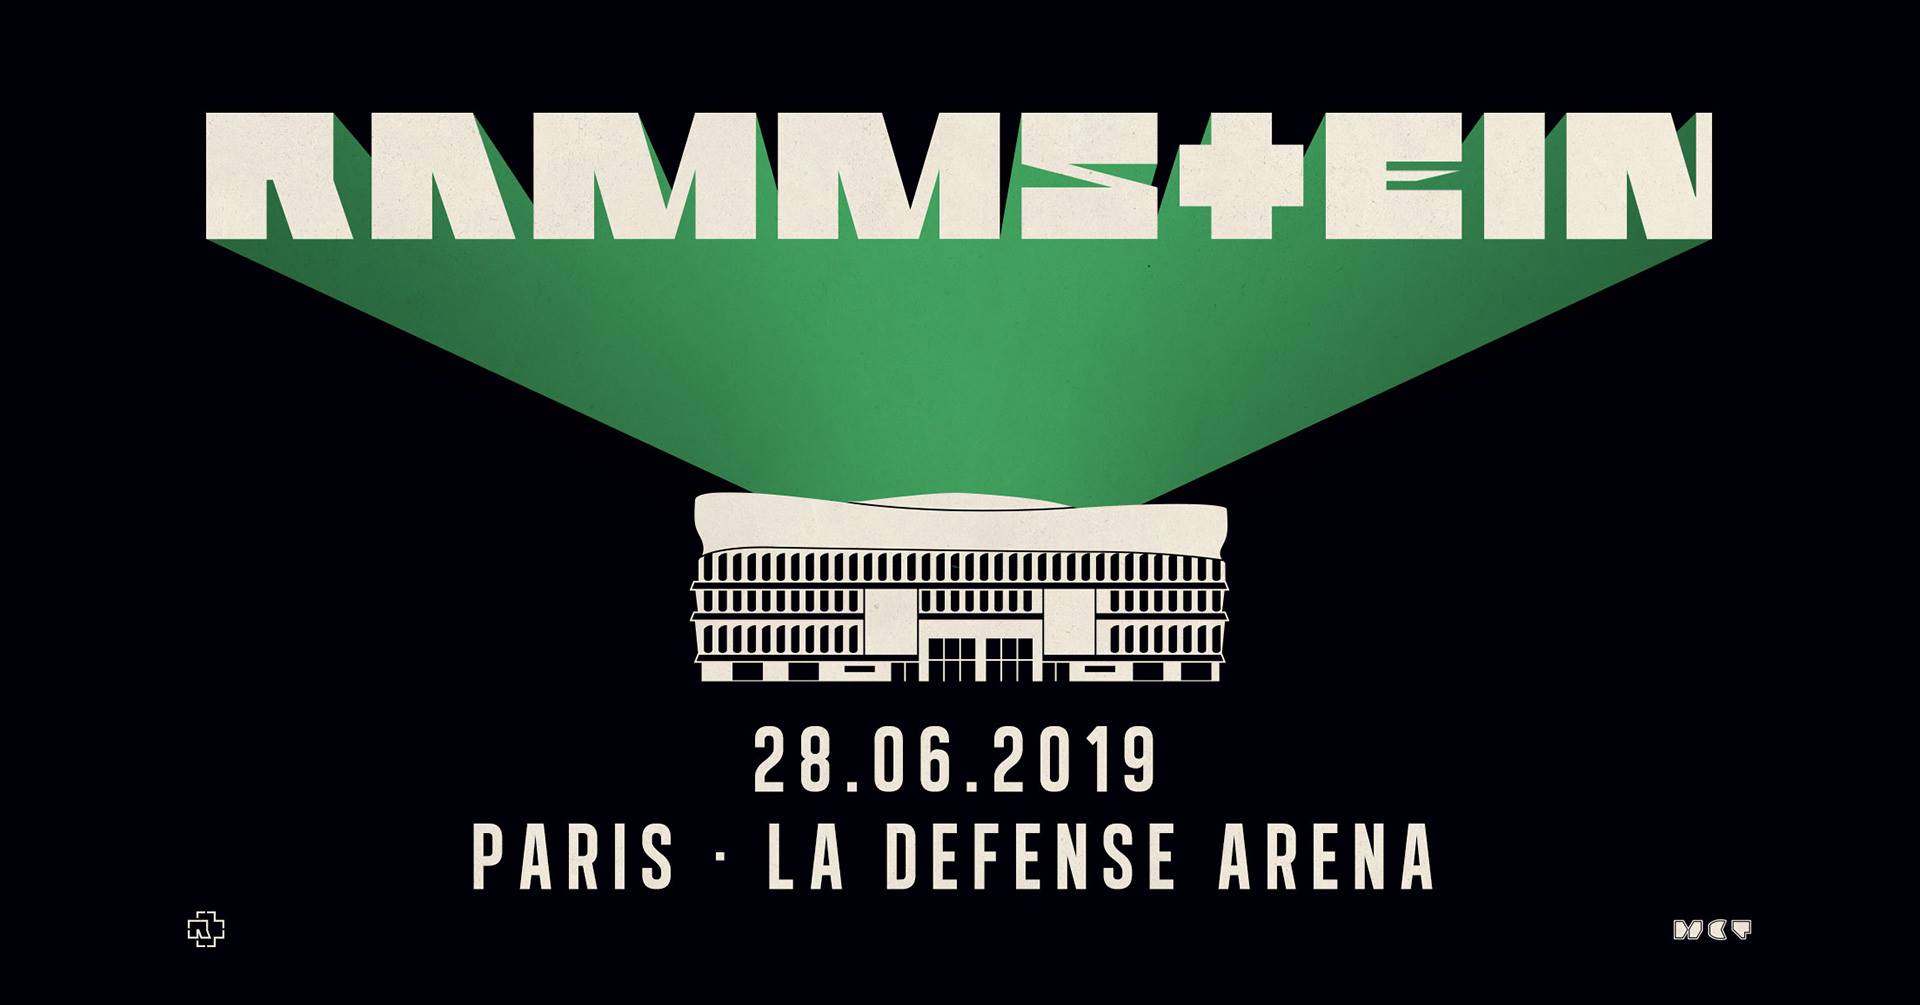 Rammstein 2019 Tour logo. Rammstein 2019 Постер. Rammstein 2019 untitled.